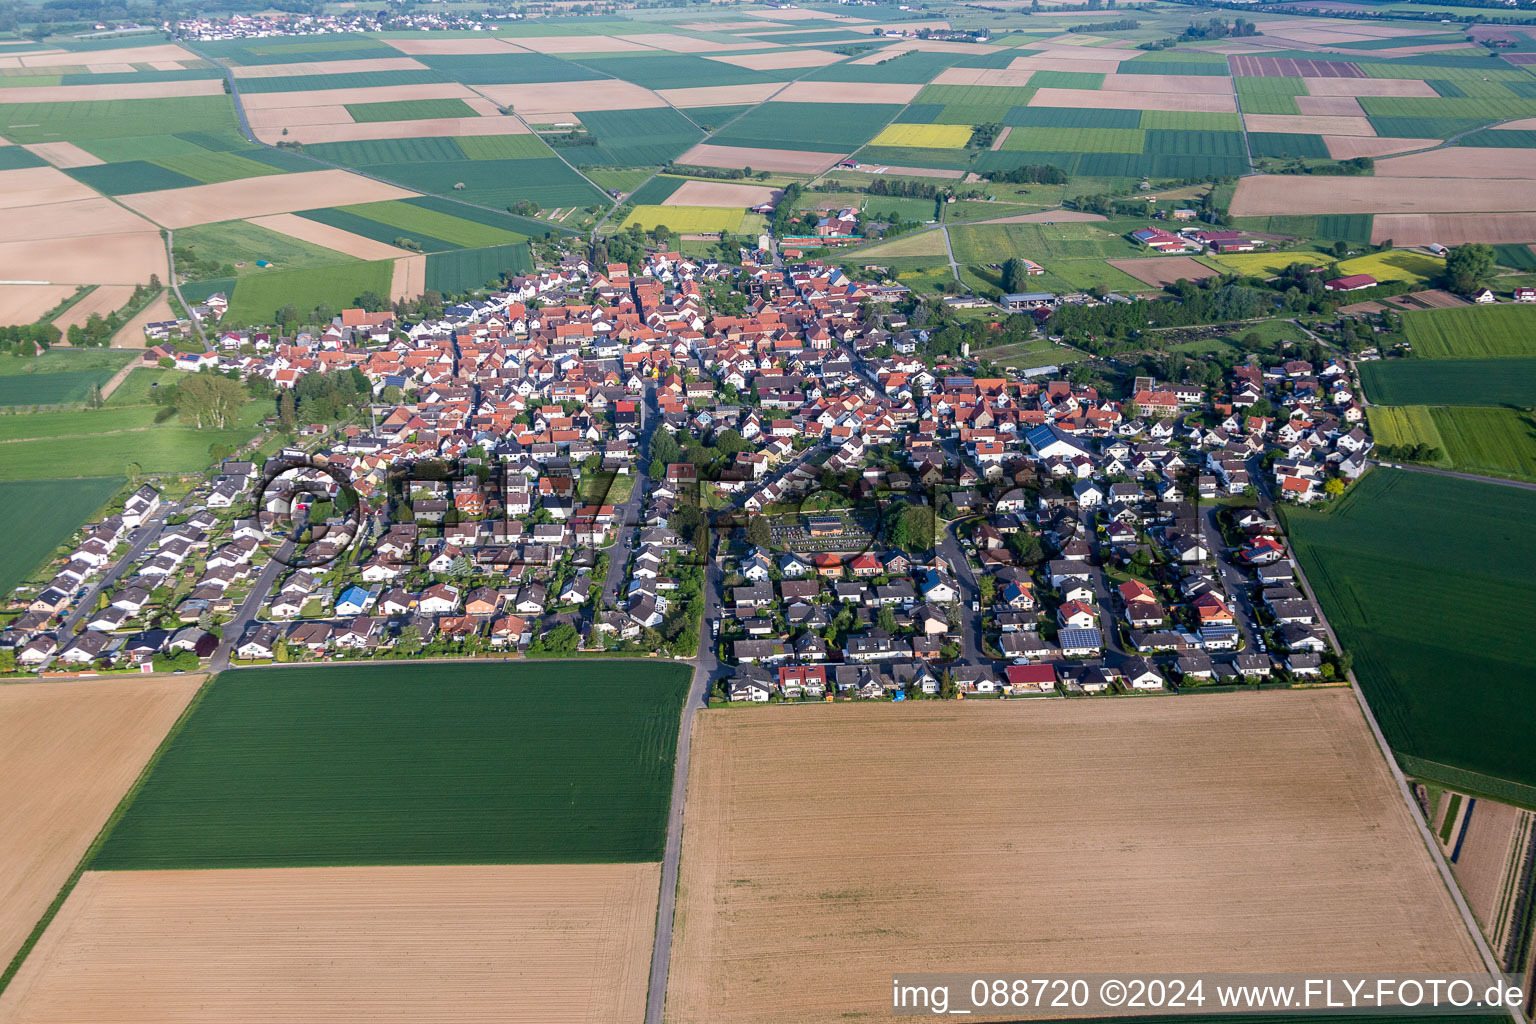 Luftbild von Dorf - Ansicht am Rande von landwirtschaftlichen Feldern und Nutzflächen in Groß-Umstadt im Bundesland Hessen, Deutschland